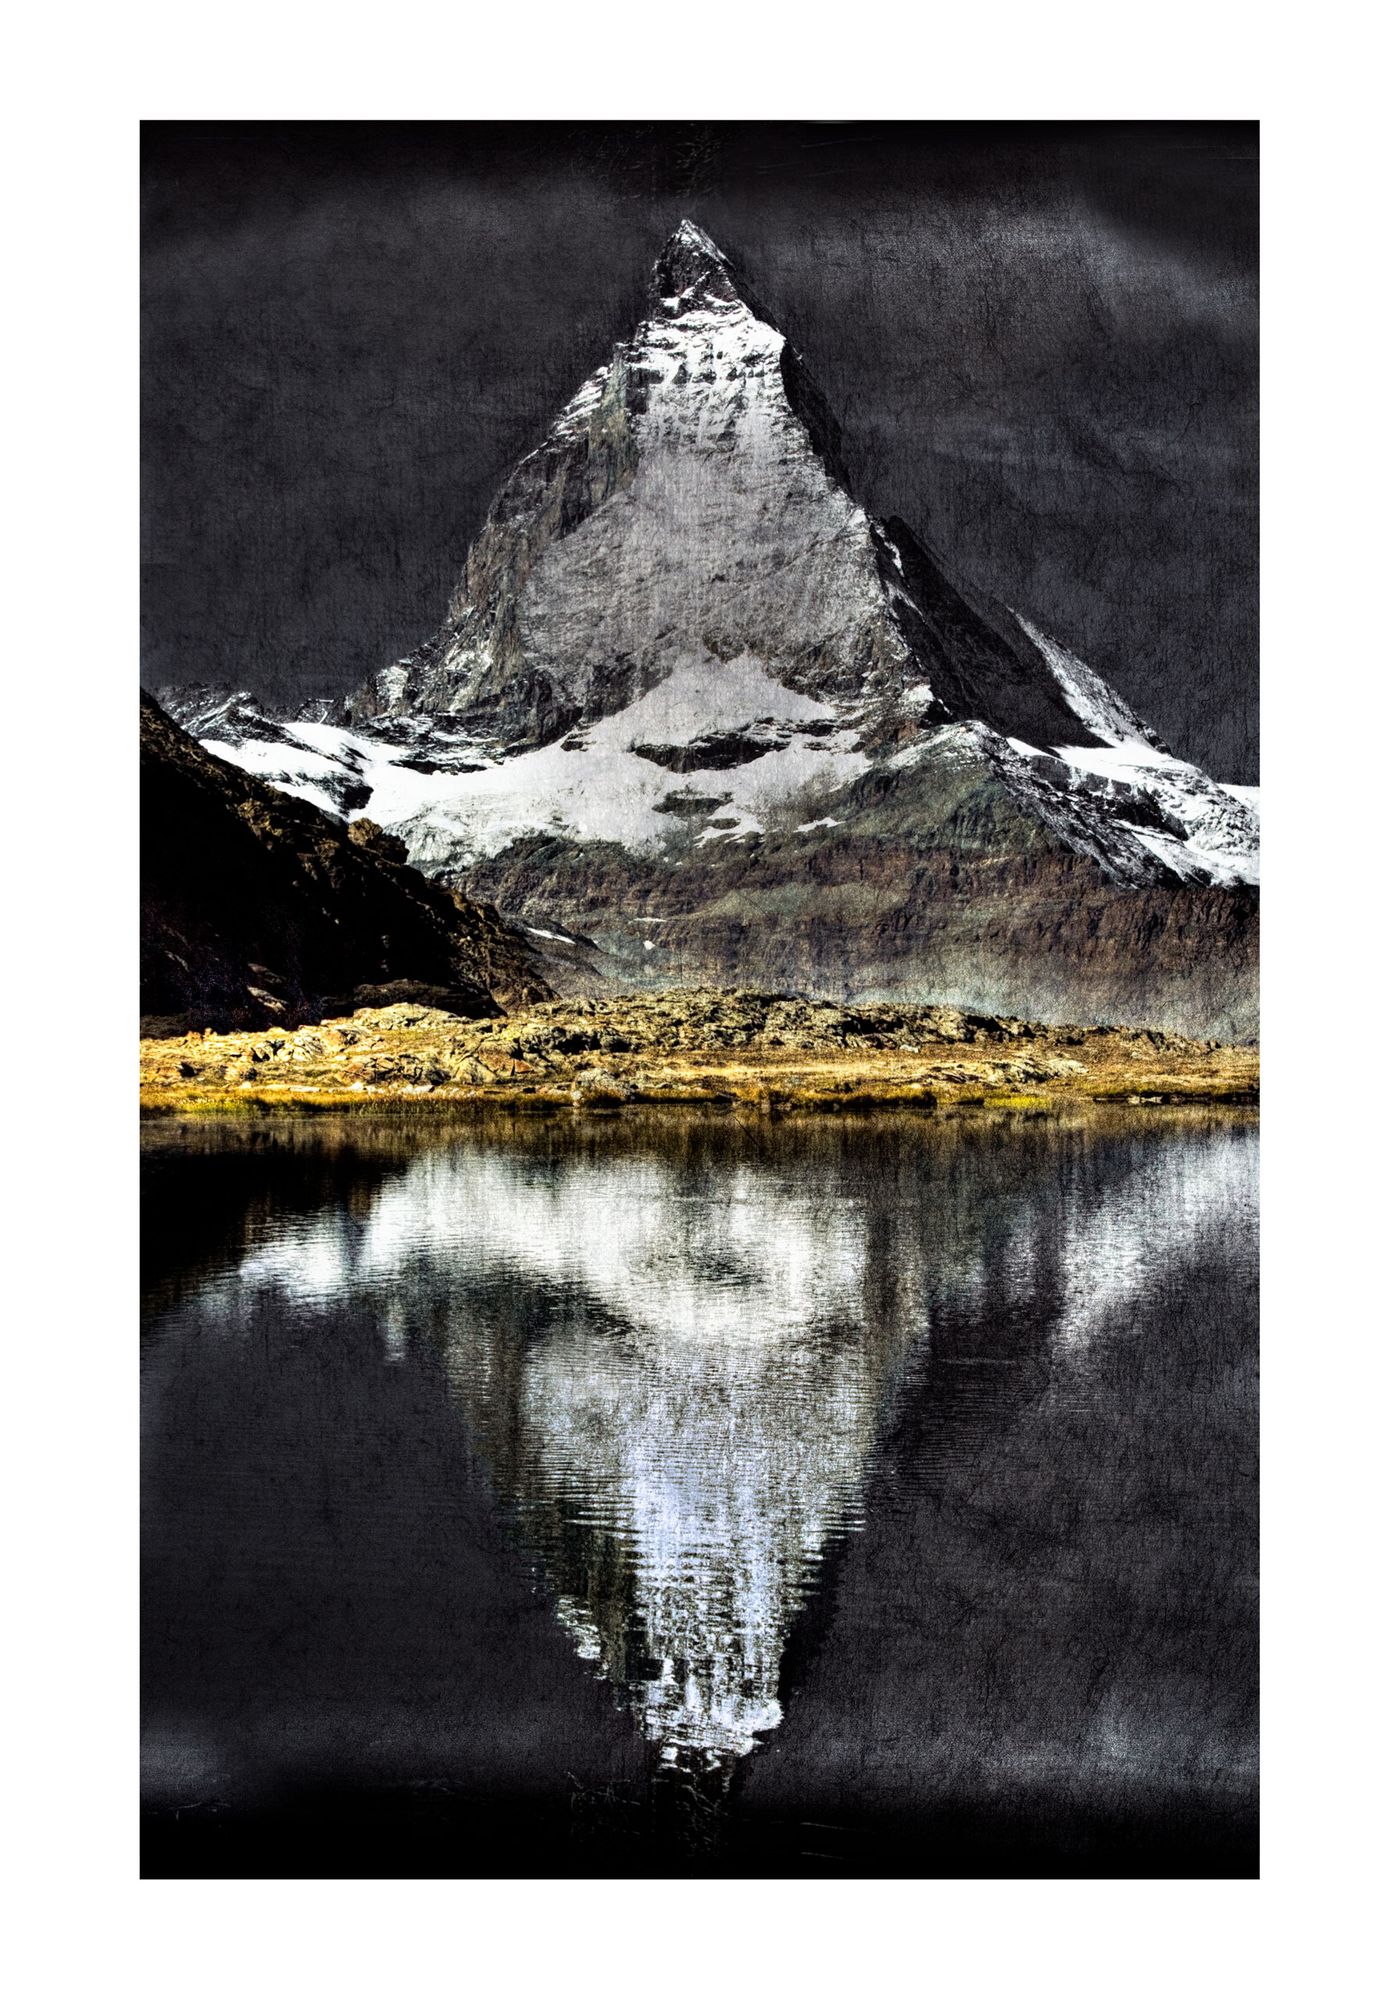 Matterhorn: Reflection